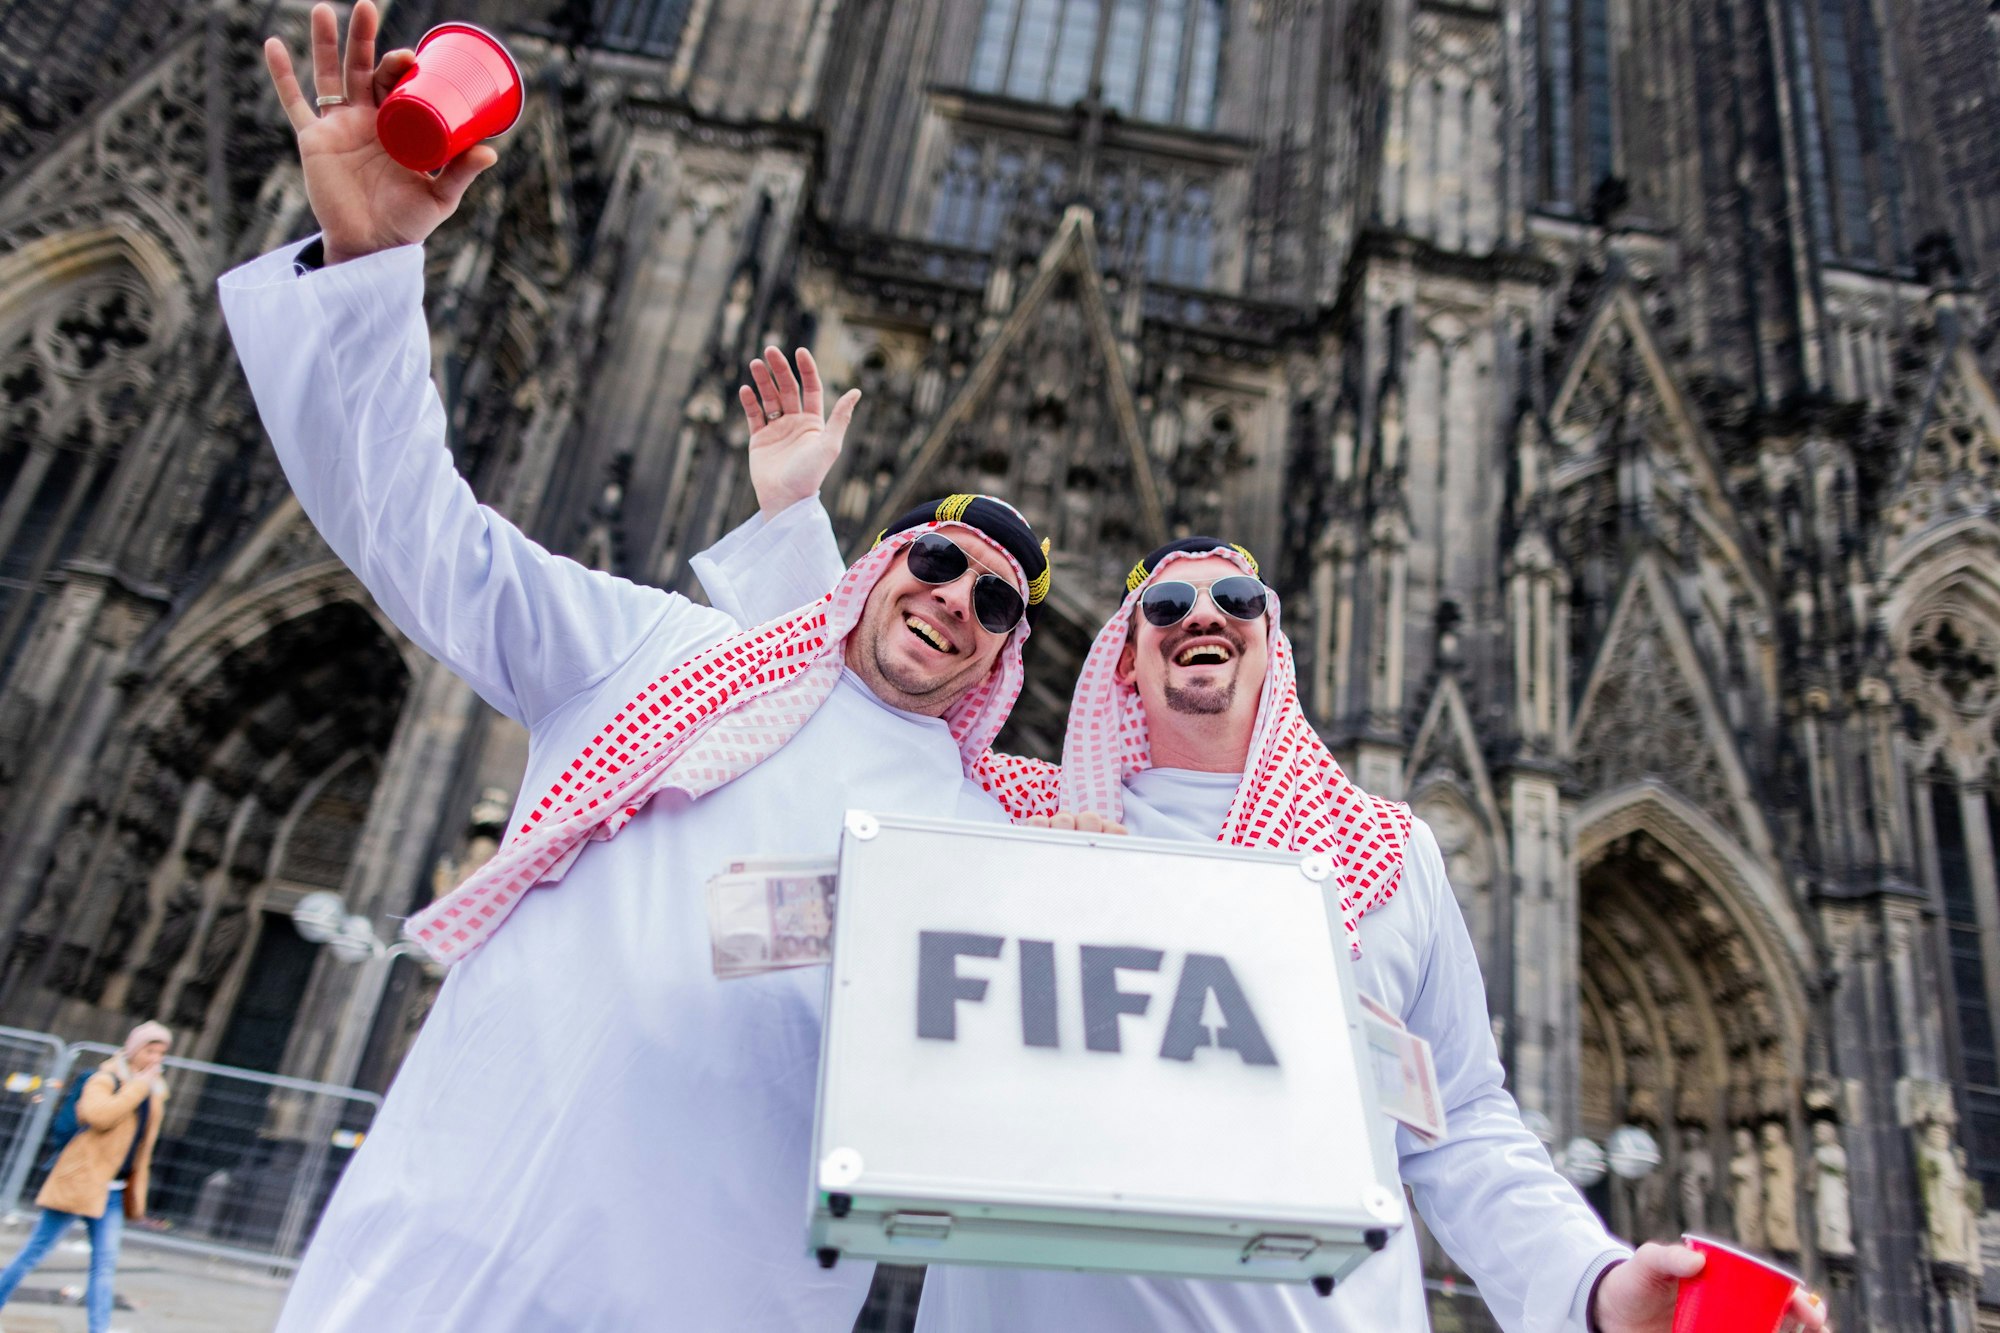 Und auch bei dieser Verkleidung ist der Hintergrund eindeutig: Die beiden Herren sind als Scheich kostümiert und tragen einen Geldkoffer mit FIFA-Aufschrift mit sich. Eine Anspielung auf die kürzlich beendete Fußball-WM in Katar.